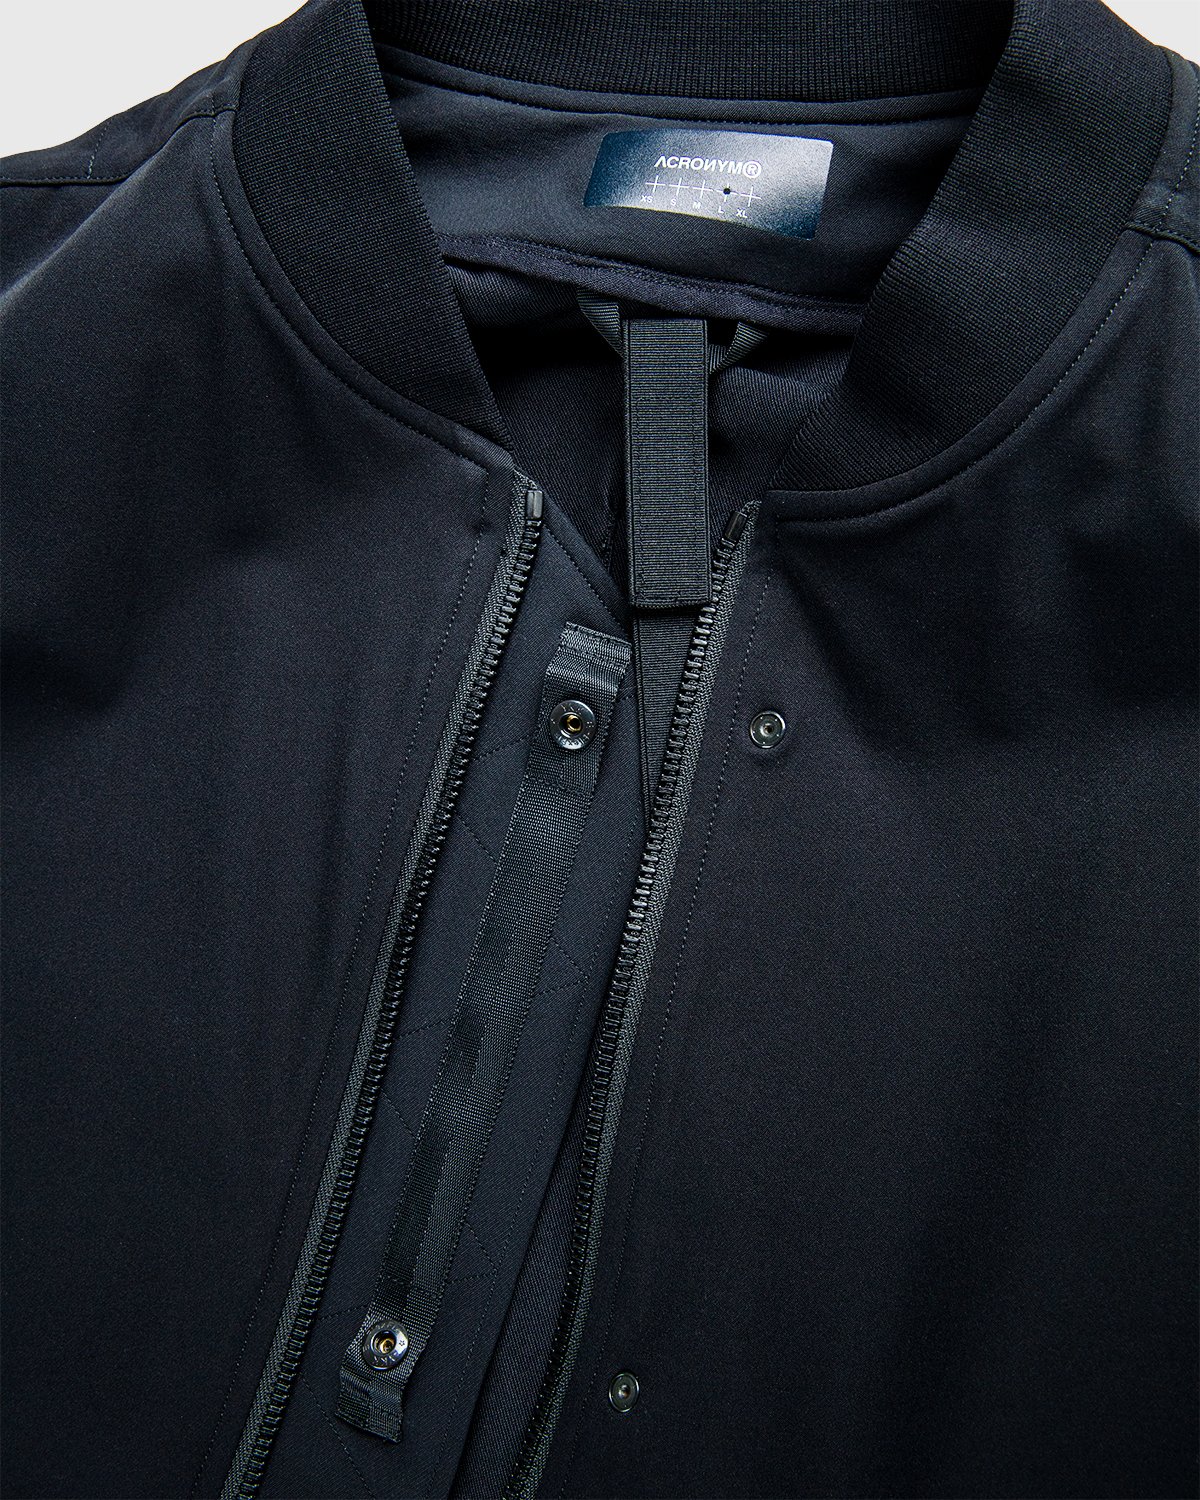 ACRONYM - J90-DS Jacket Black - Clothing - Black - Image 6